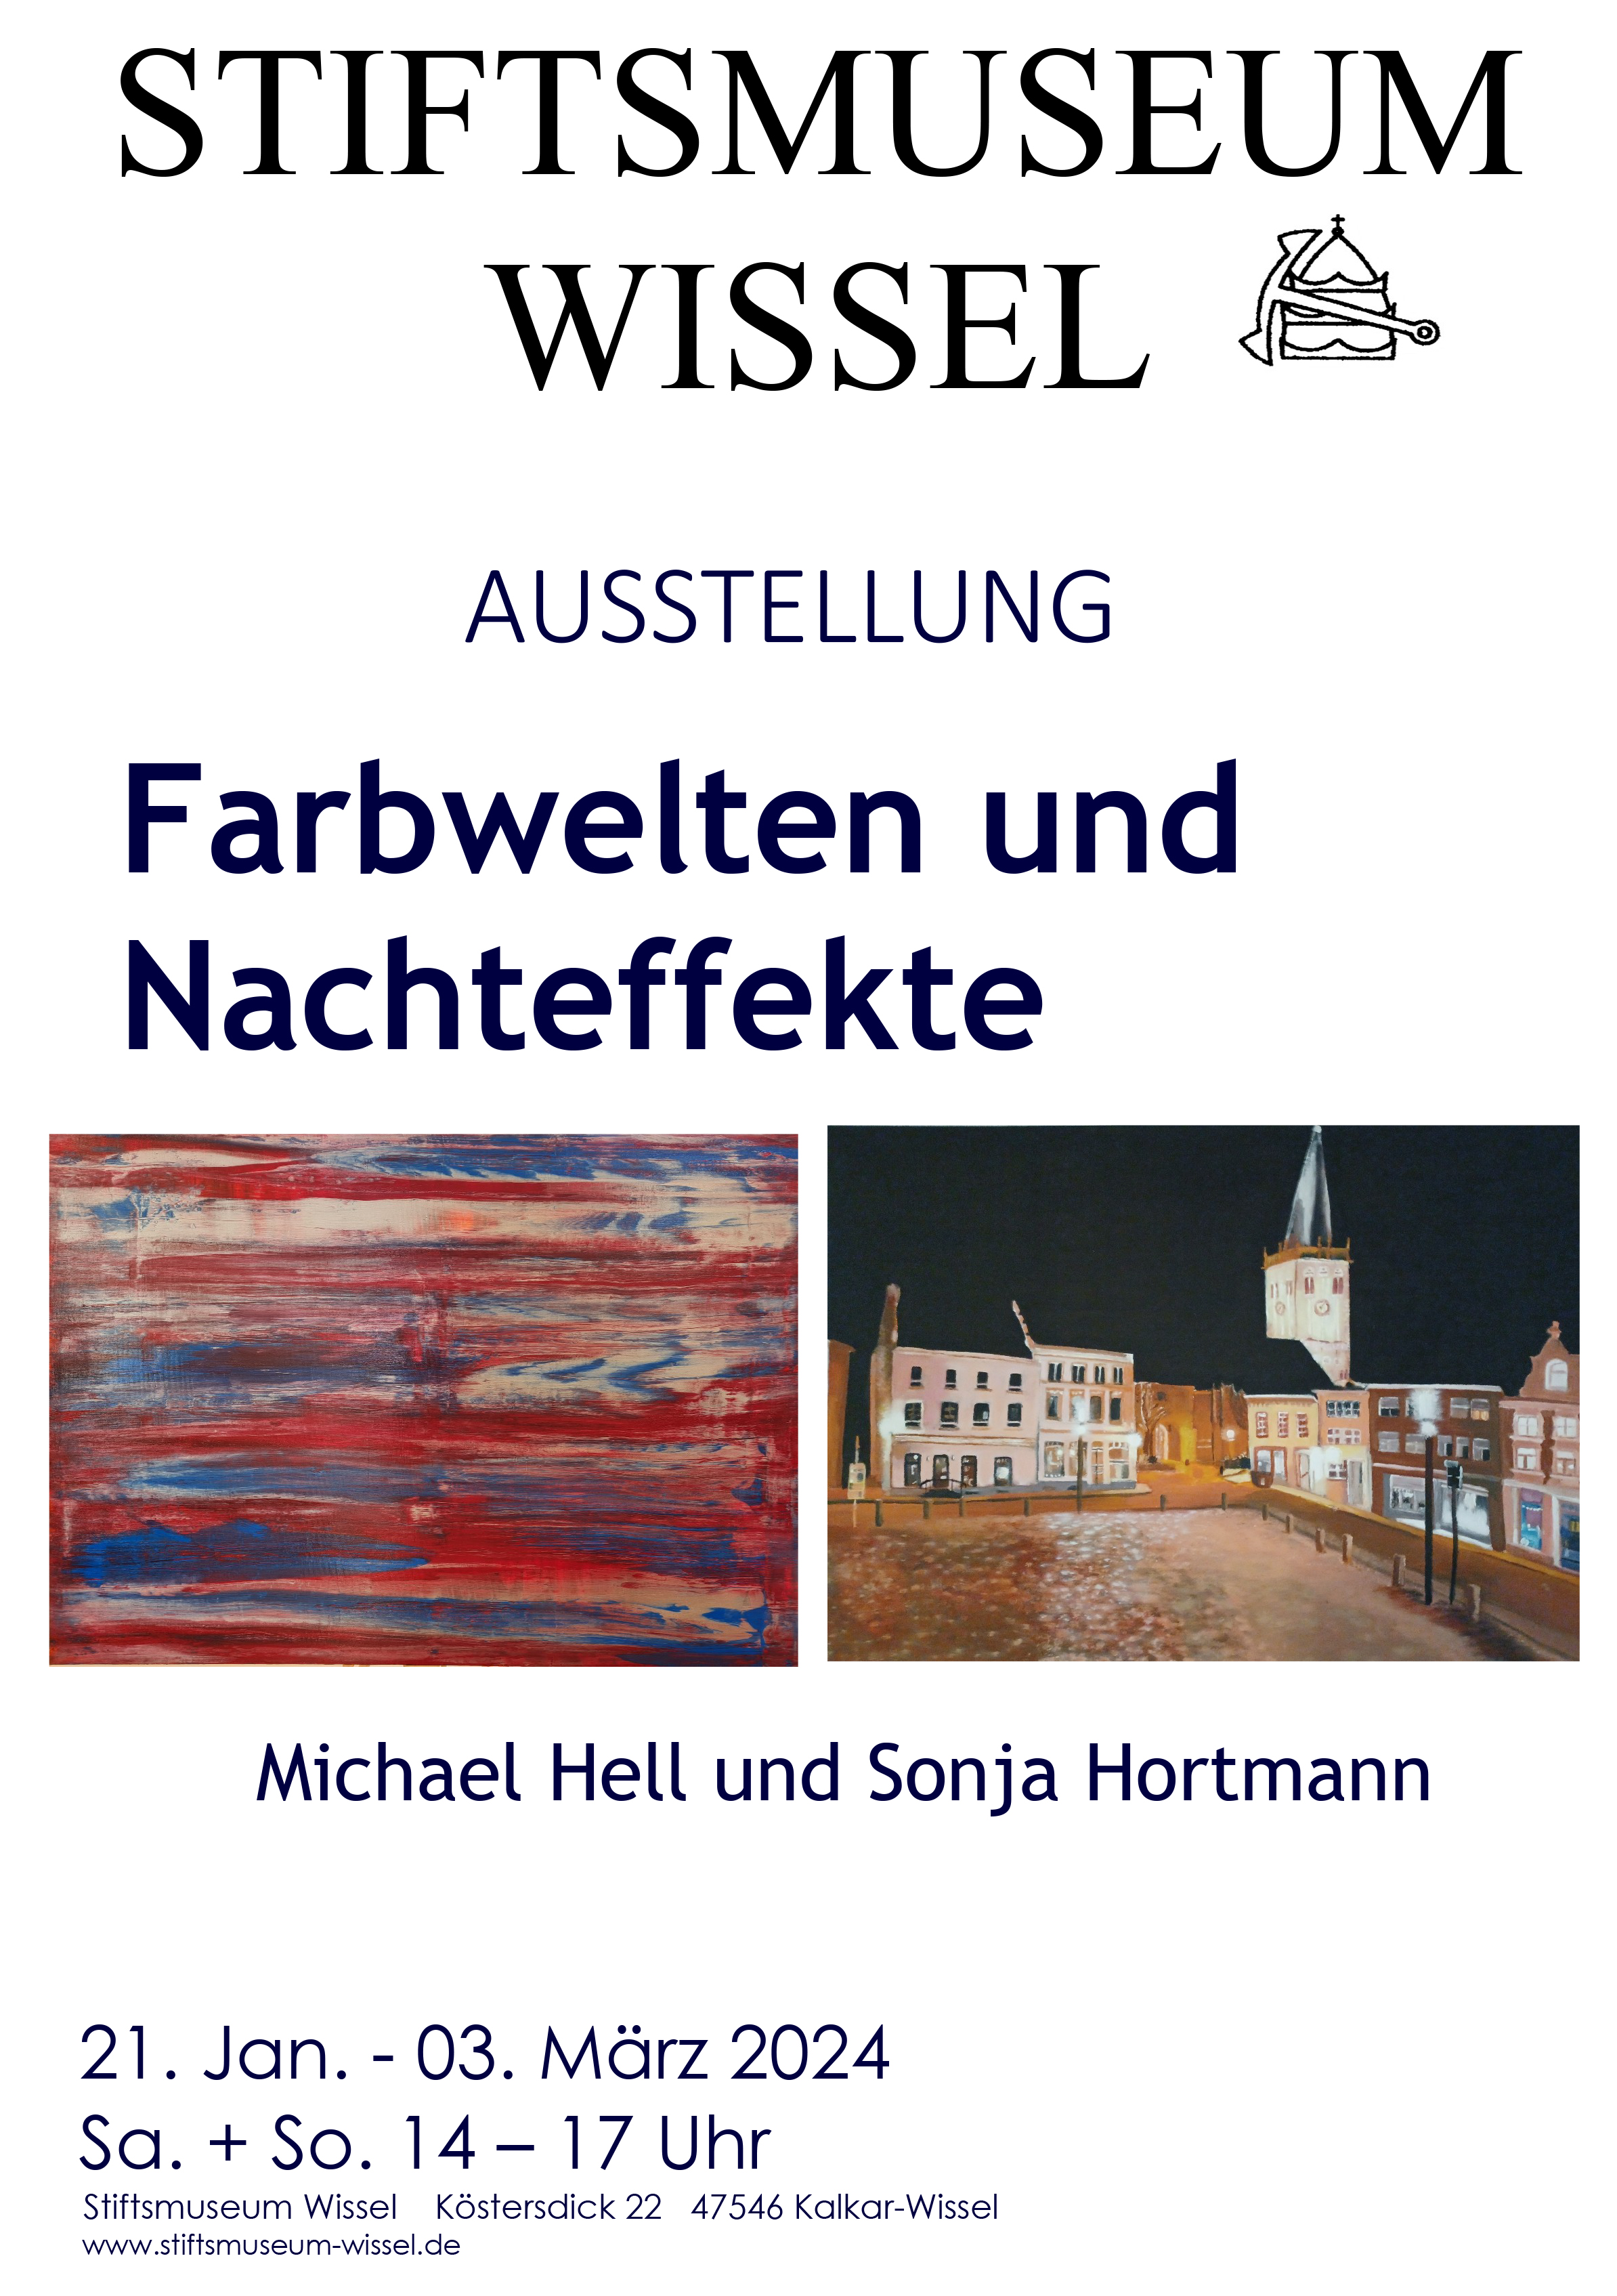 Plakat Ausstellung Stiftsmuseum Wissel, Farbweltern und Nachteffekte